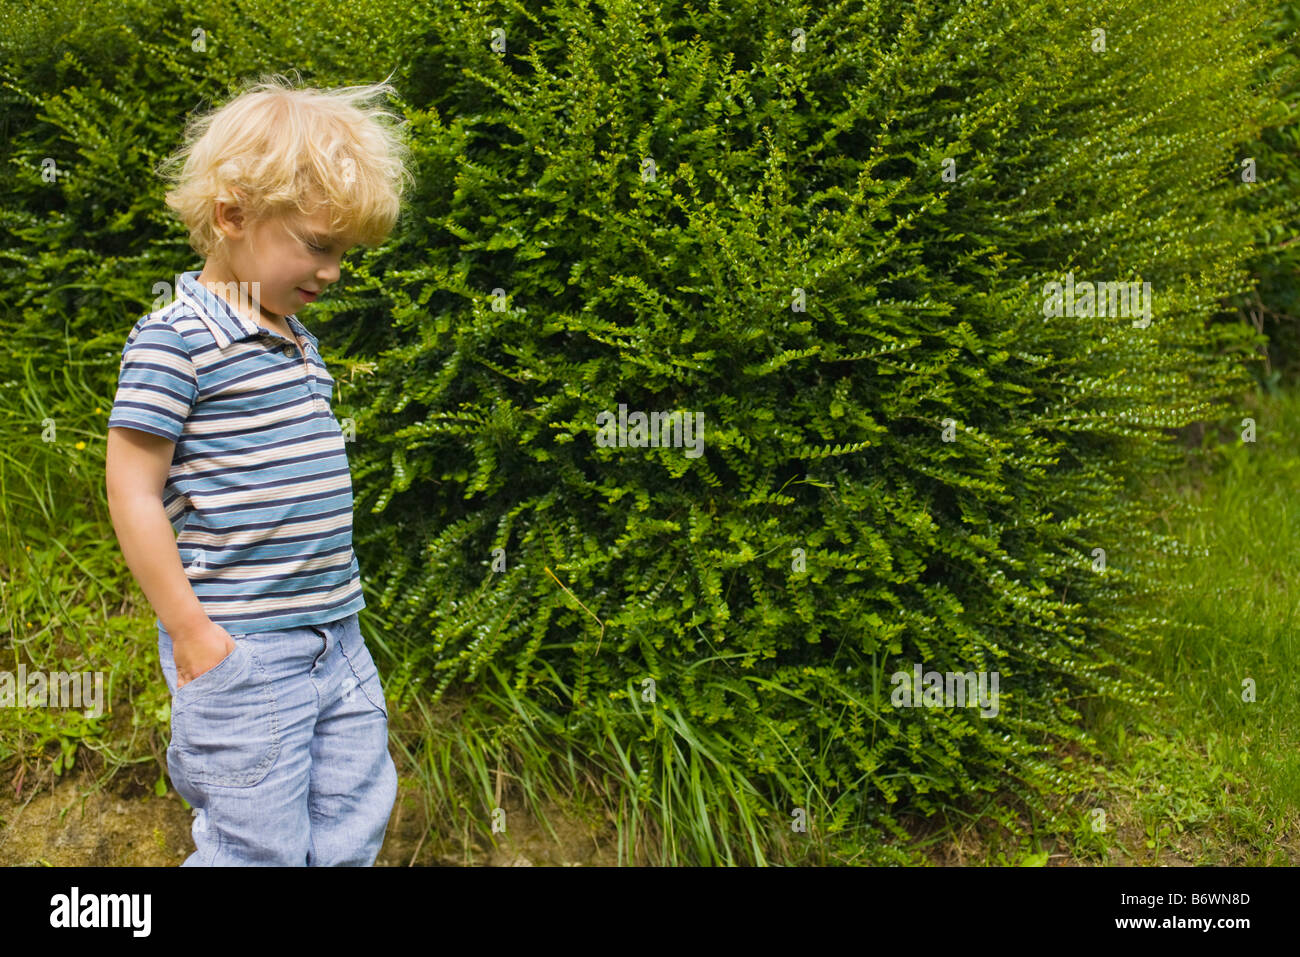 A boy walking past a bush Stock Photo